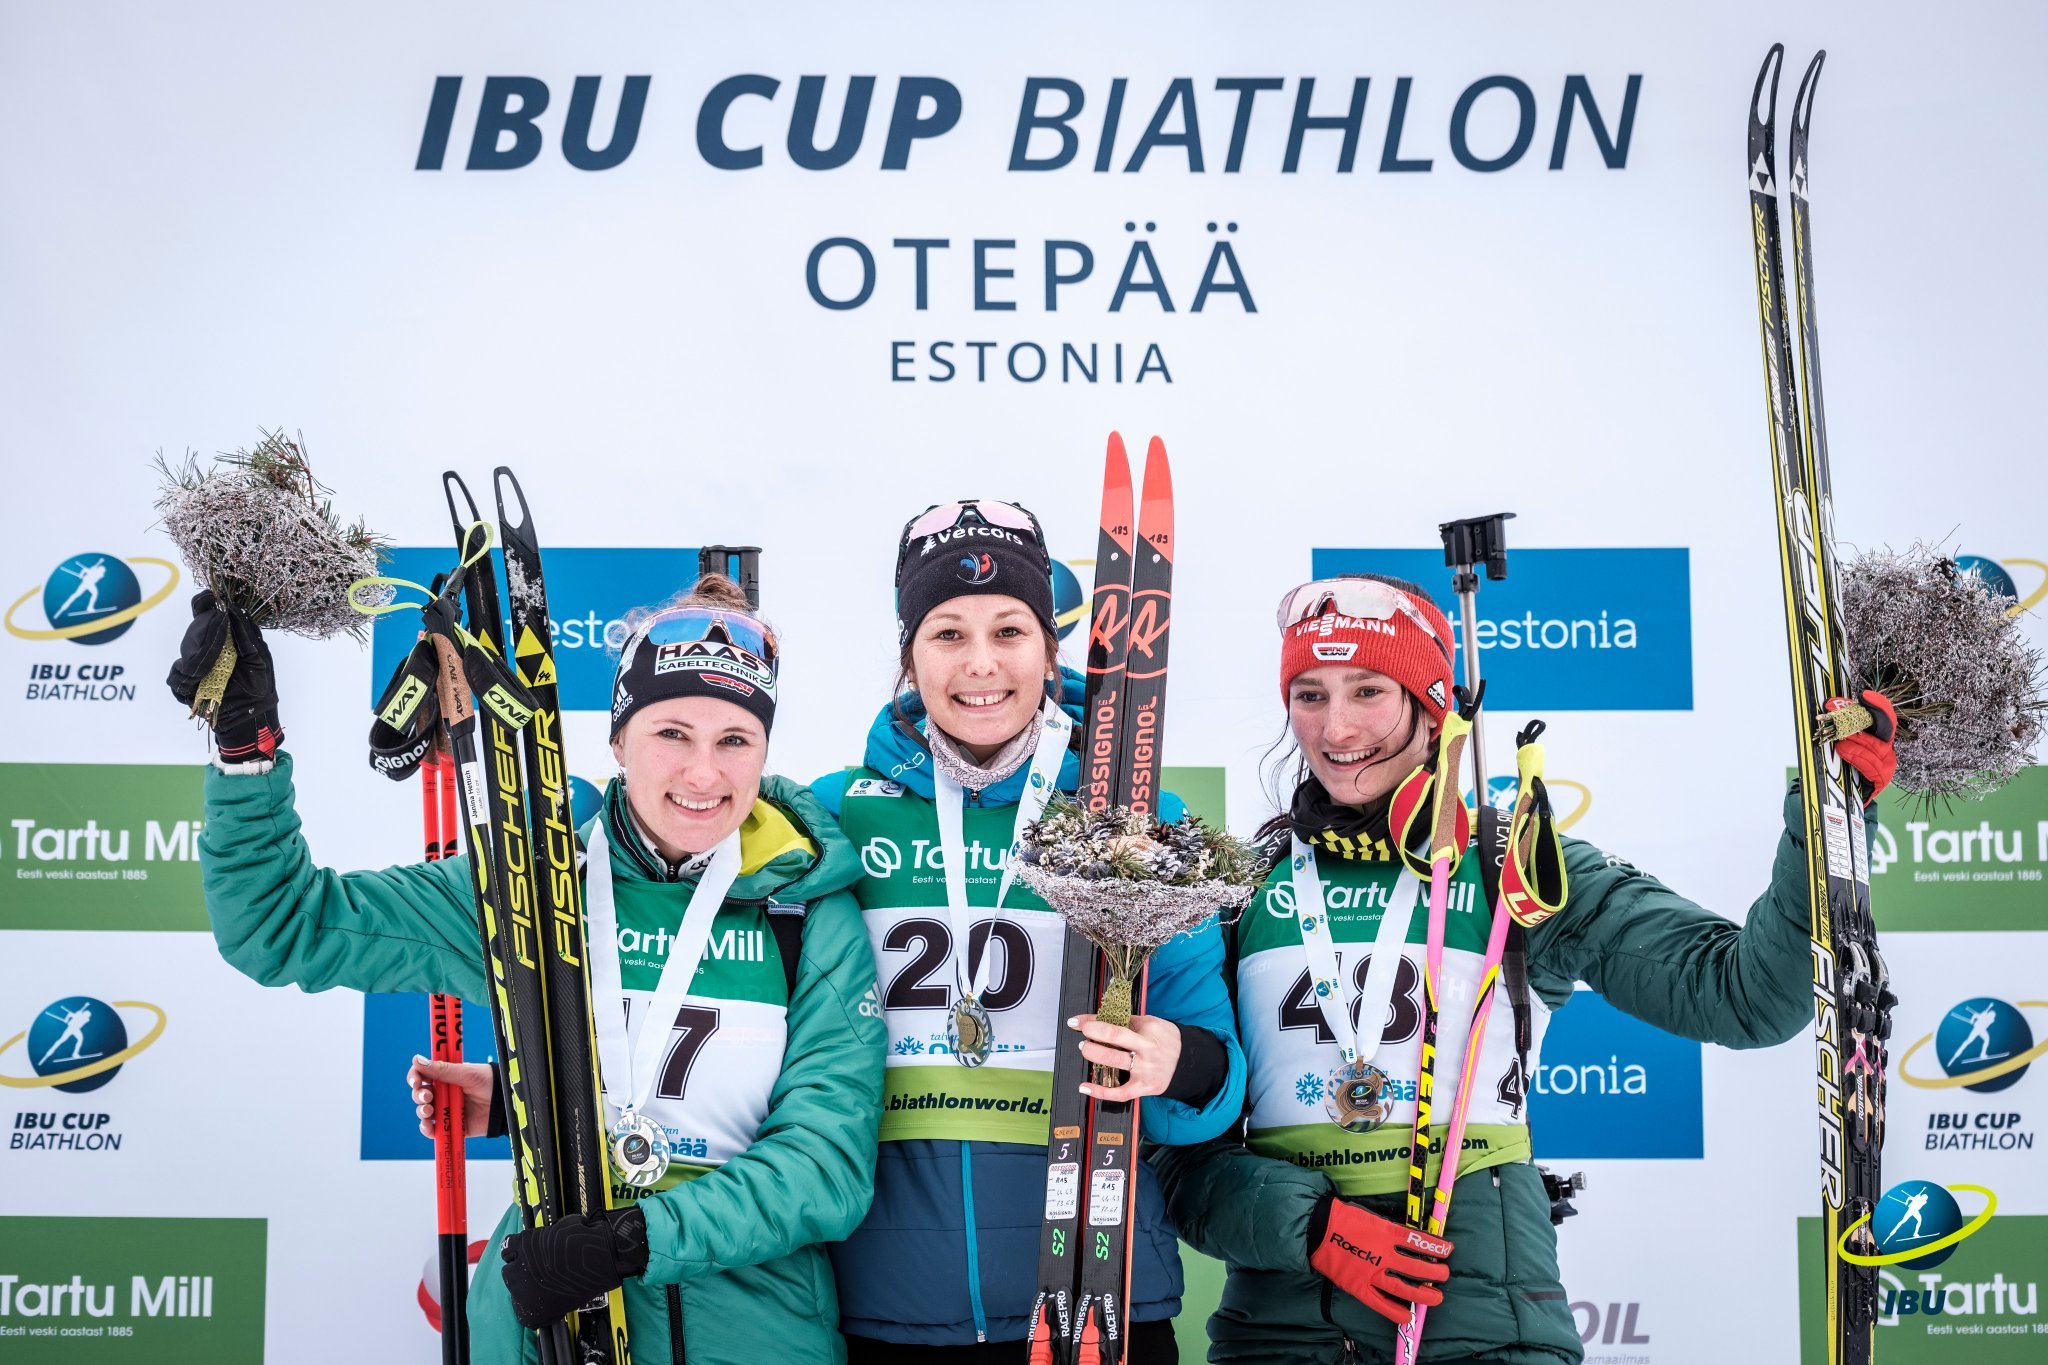 BIATHLON - Chloé Chevalier a remporté, avec la manière, le sprint comptant pour l’IBU cup d’Otepää. Sa première victoire de l’hiver !